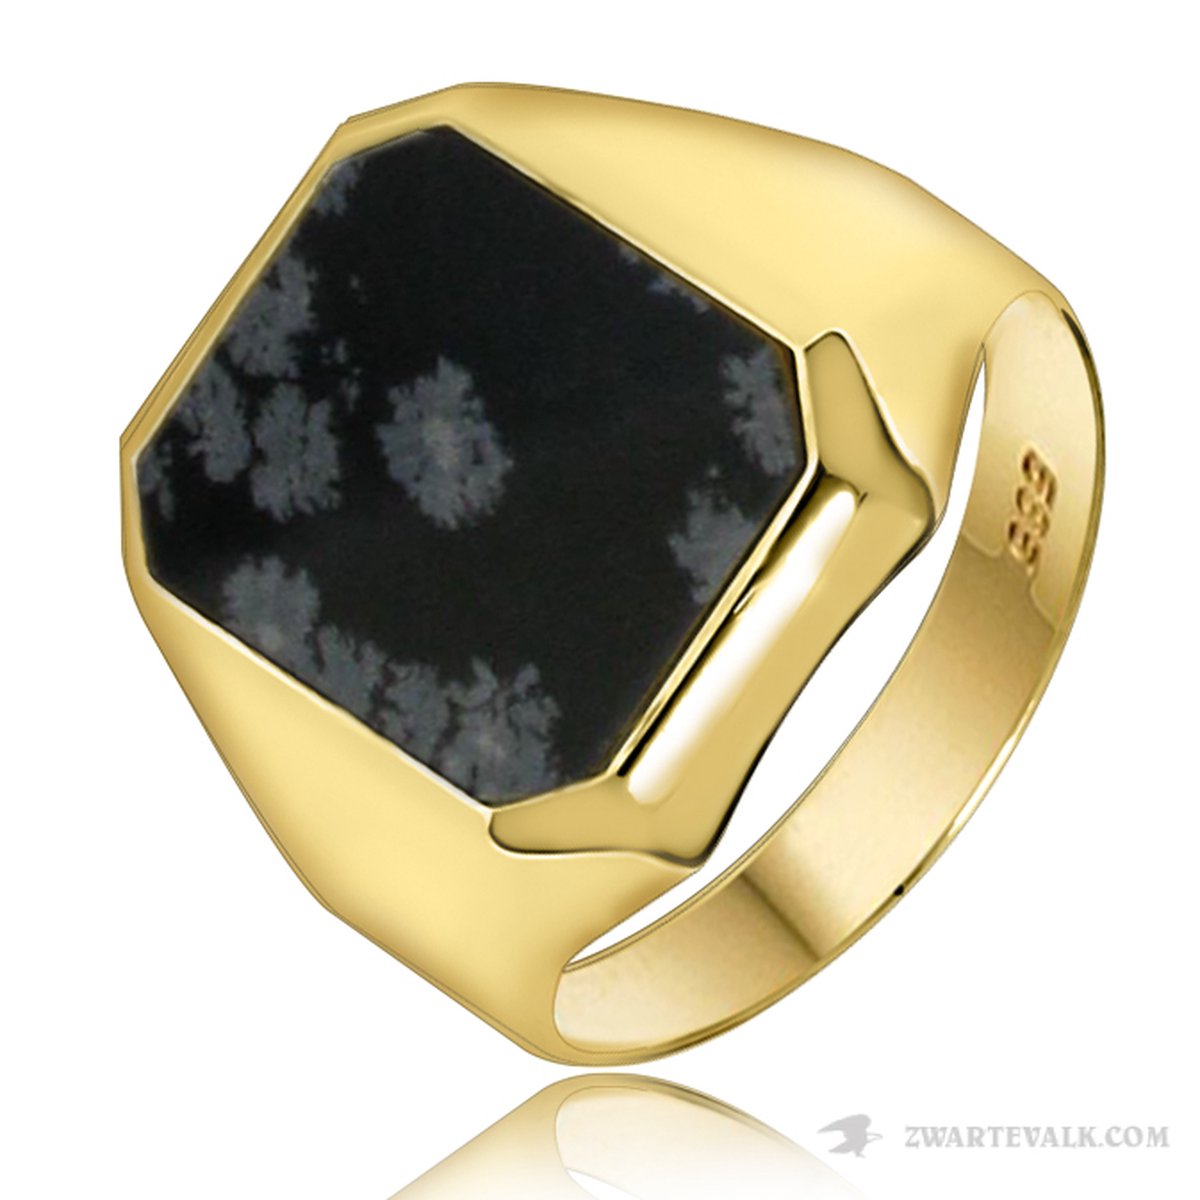 Juwelier Zwartevalk - 14 karaat gouden ring met onyx 125542/19